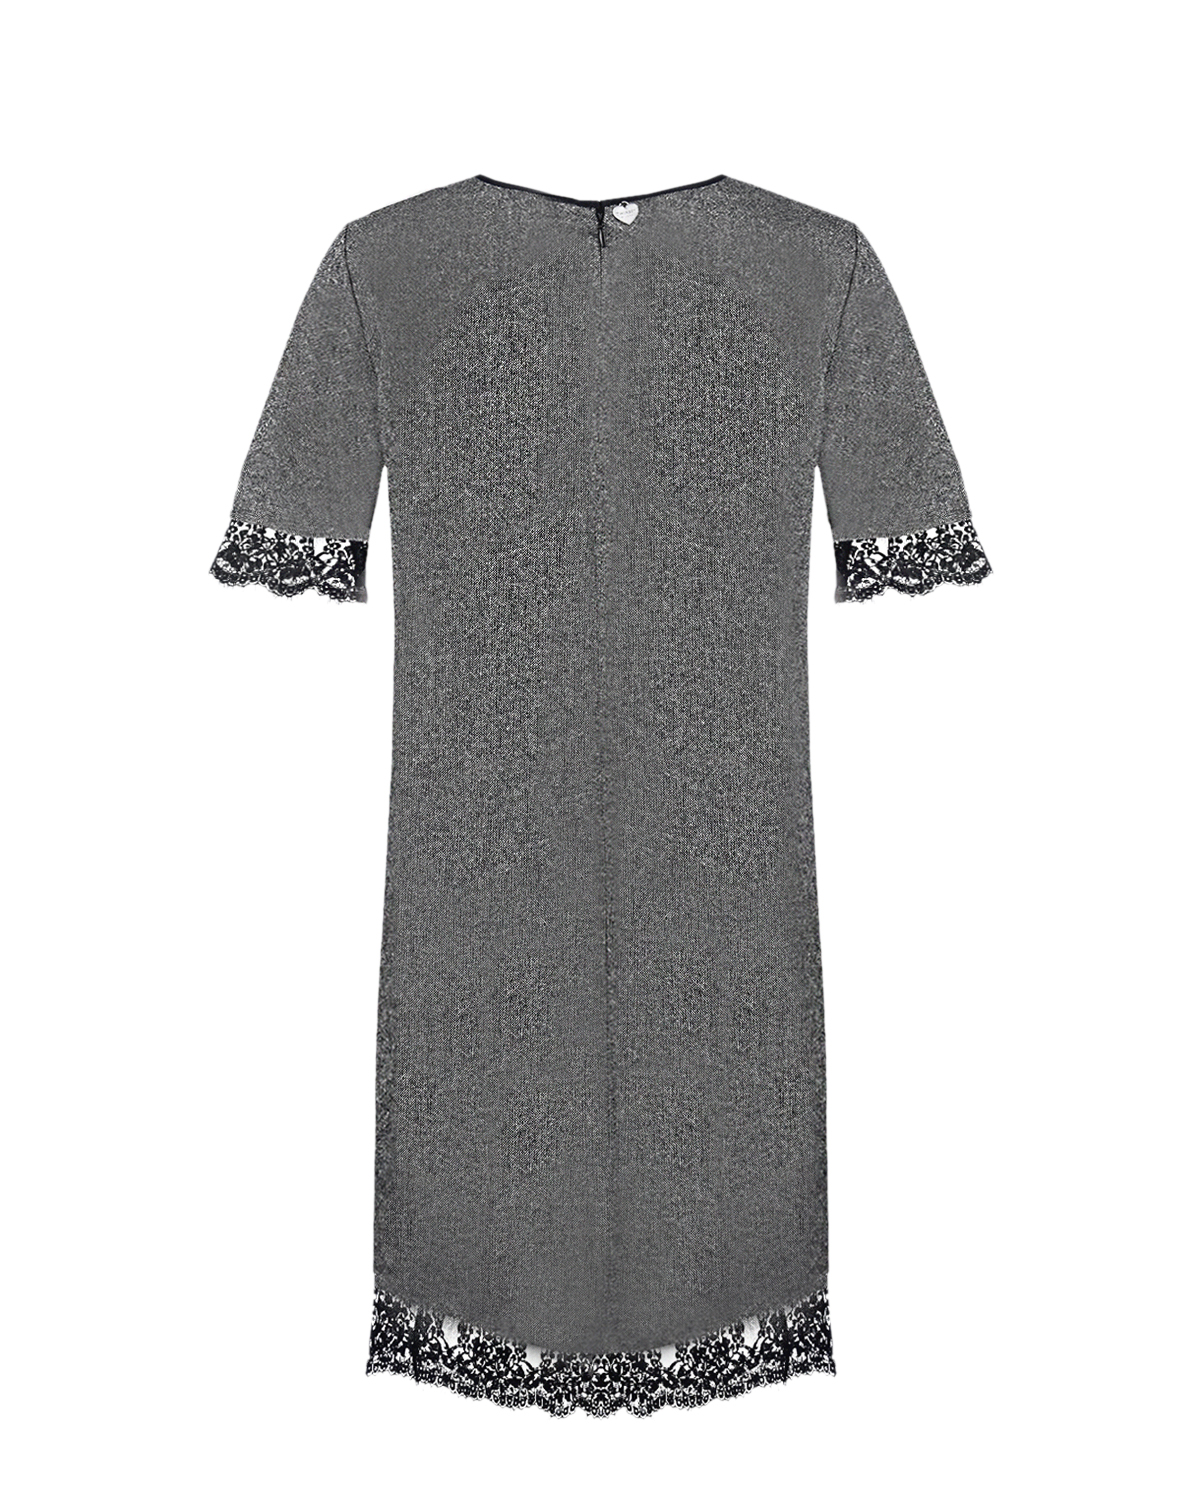 Серое платье из твида TWINSET, размер 42, цвет серый - фото 5